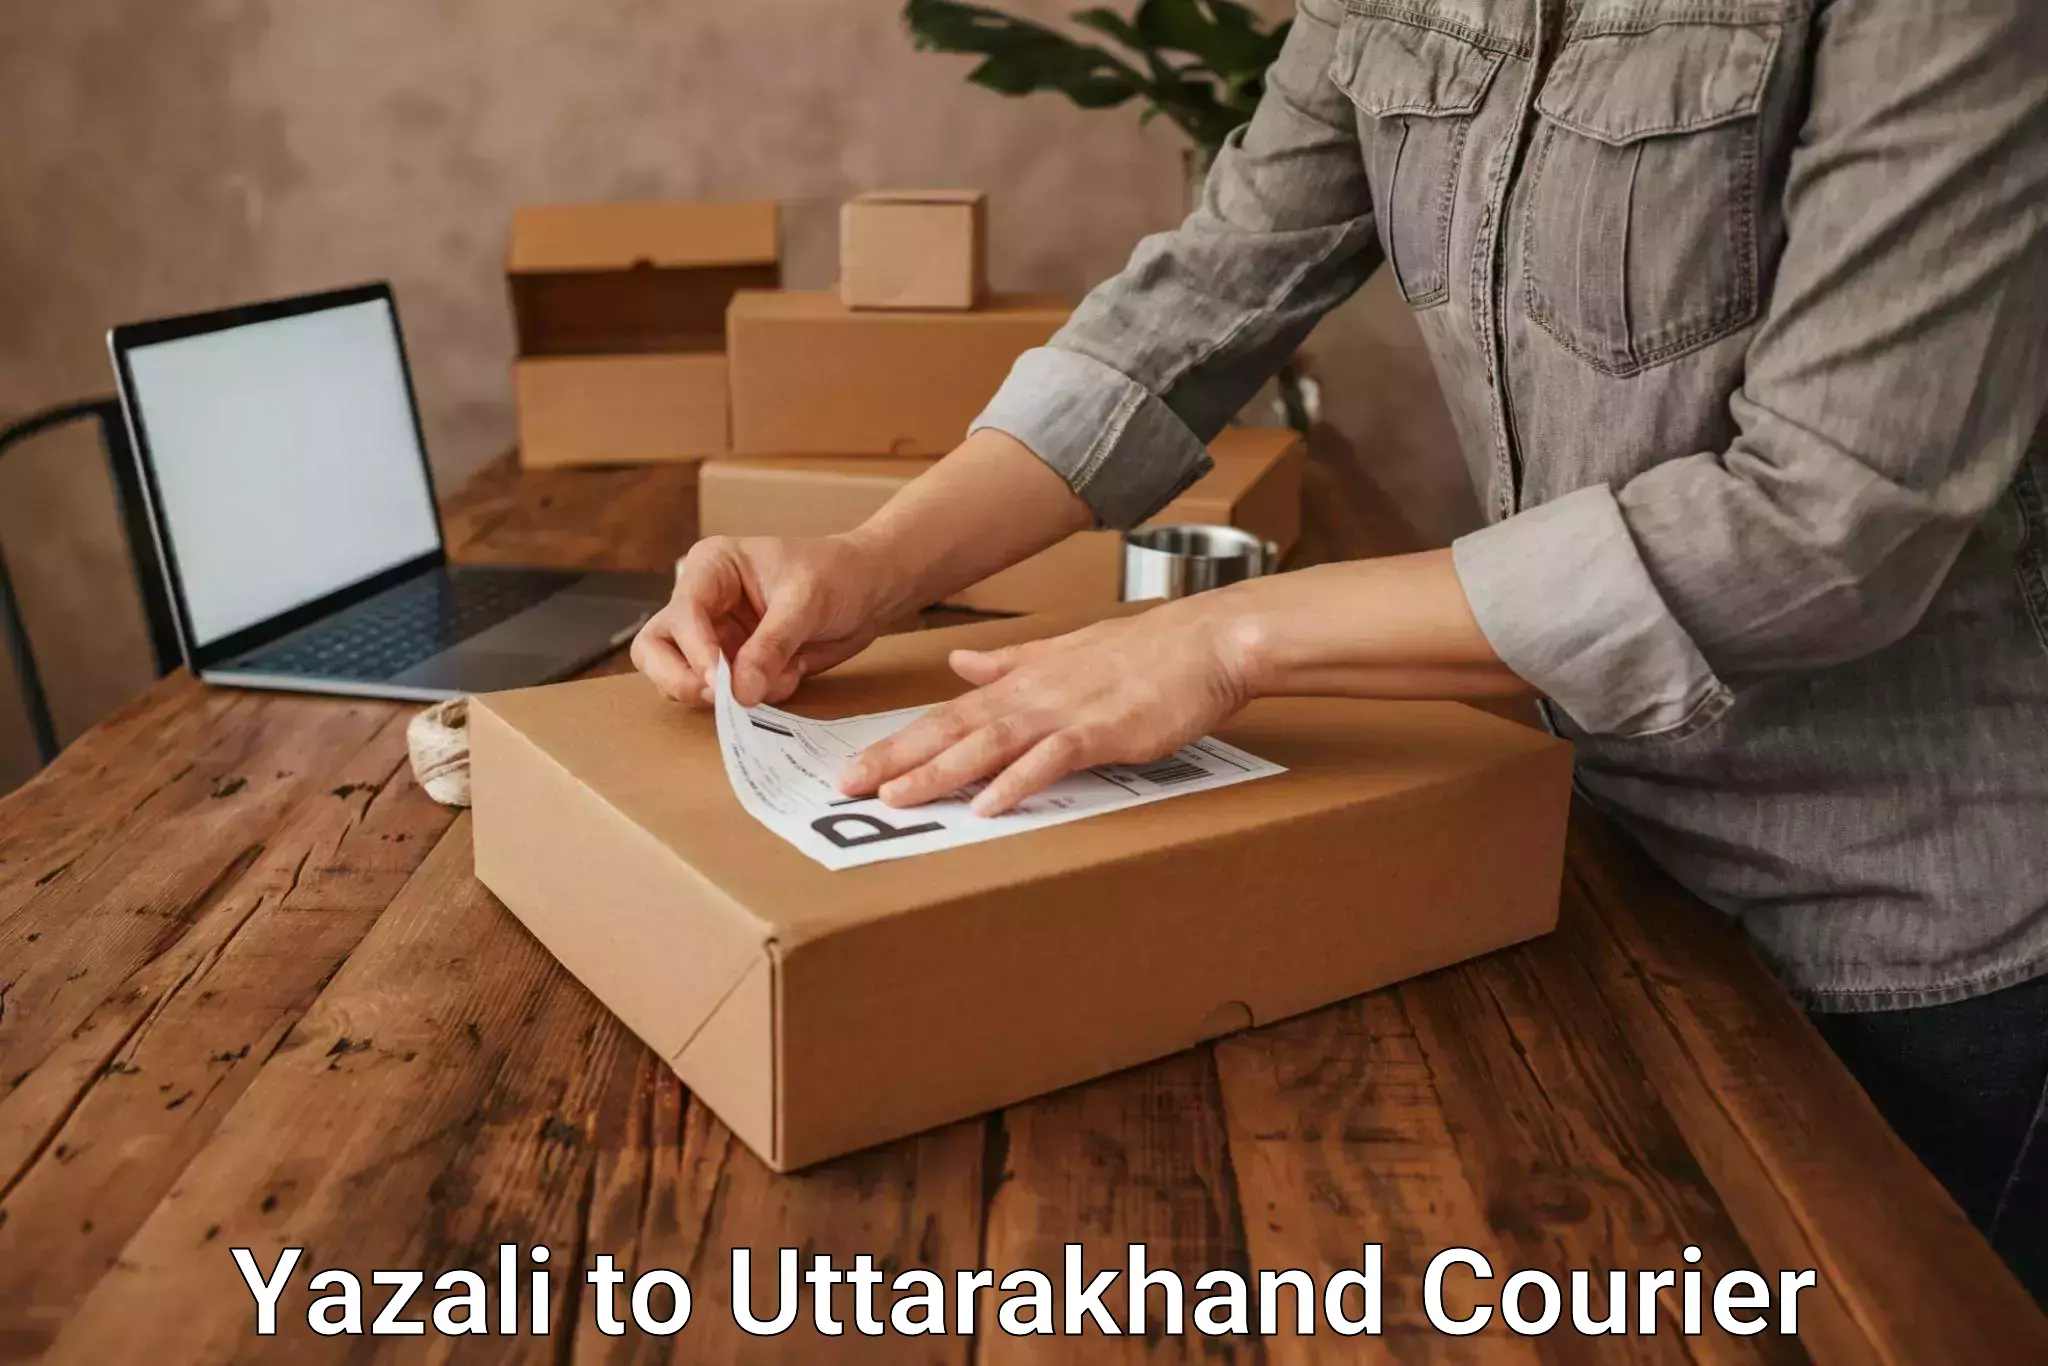 Multi-national courier services Yazali to Paithani